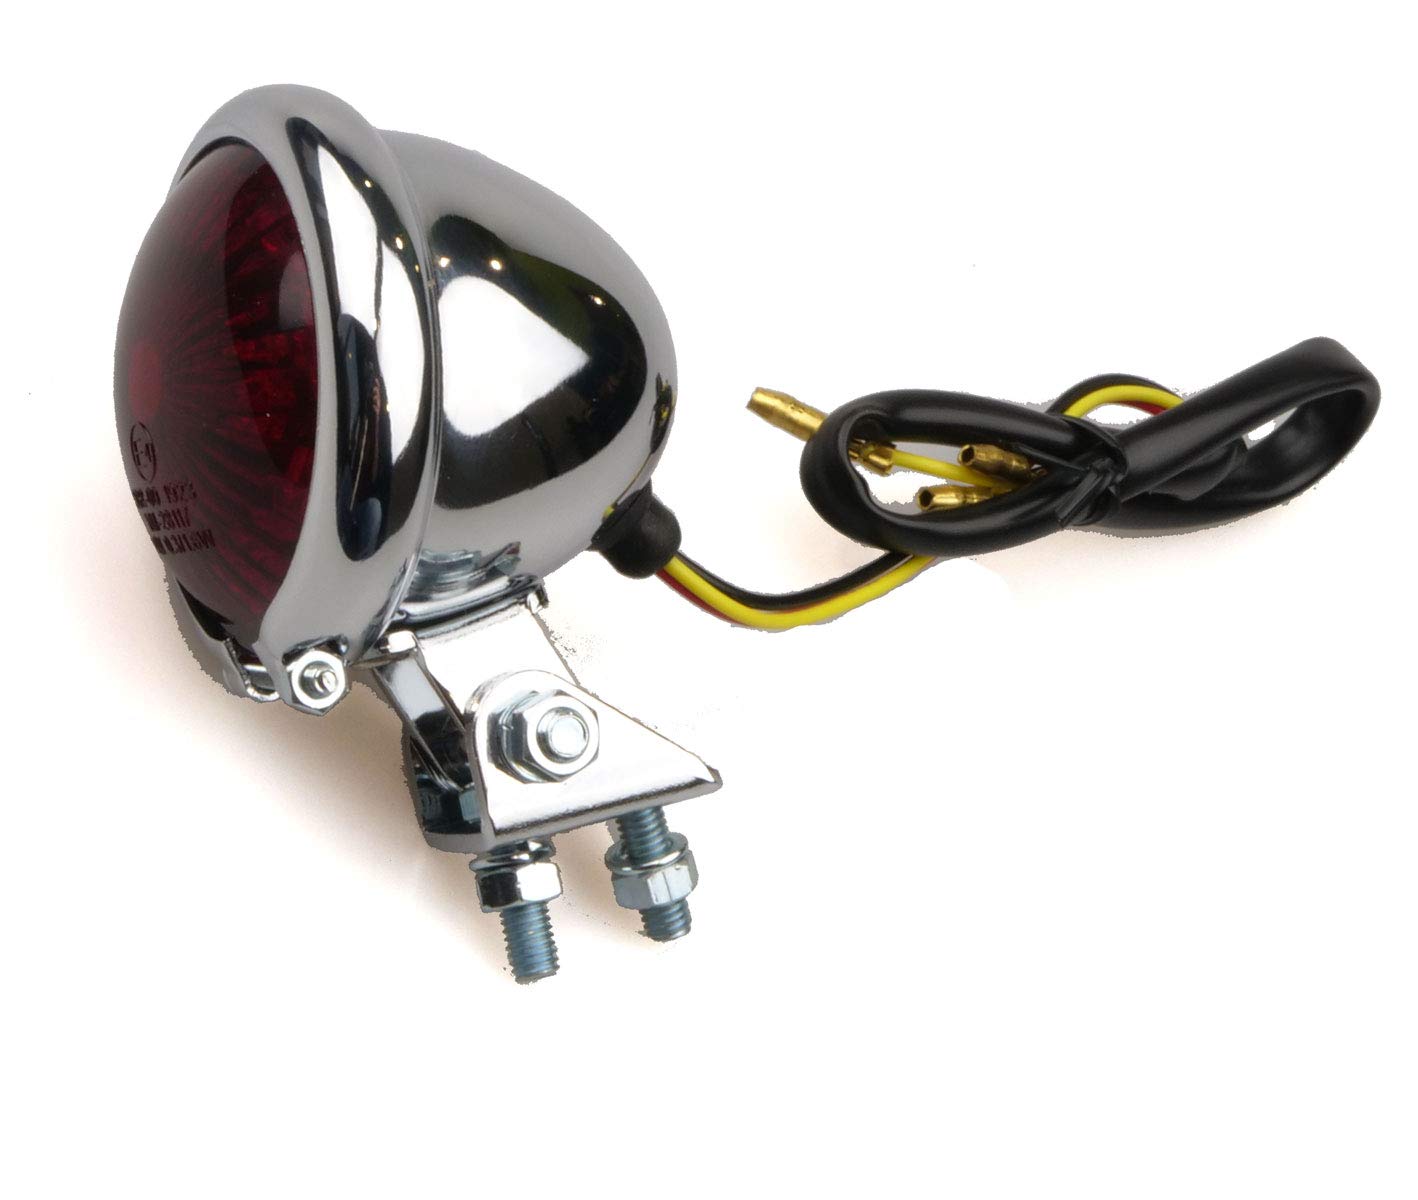 IGUANA CUSTOM TEILE - LED Rücklicht für Motorrad Bates Stil Chrom mit LED Brems- und Positionslicht - E-Prüfzeichen zugelassen - perfekt für Cafe Racer, Bobber, Chopper etc. von Iguana Custom